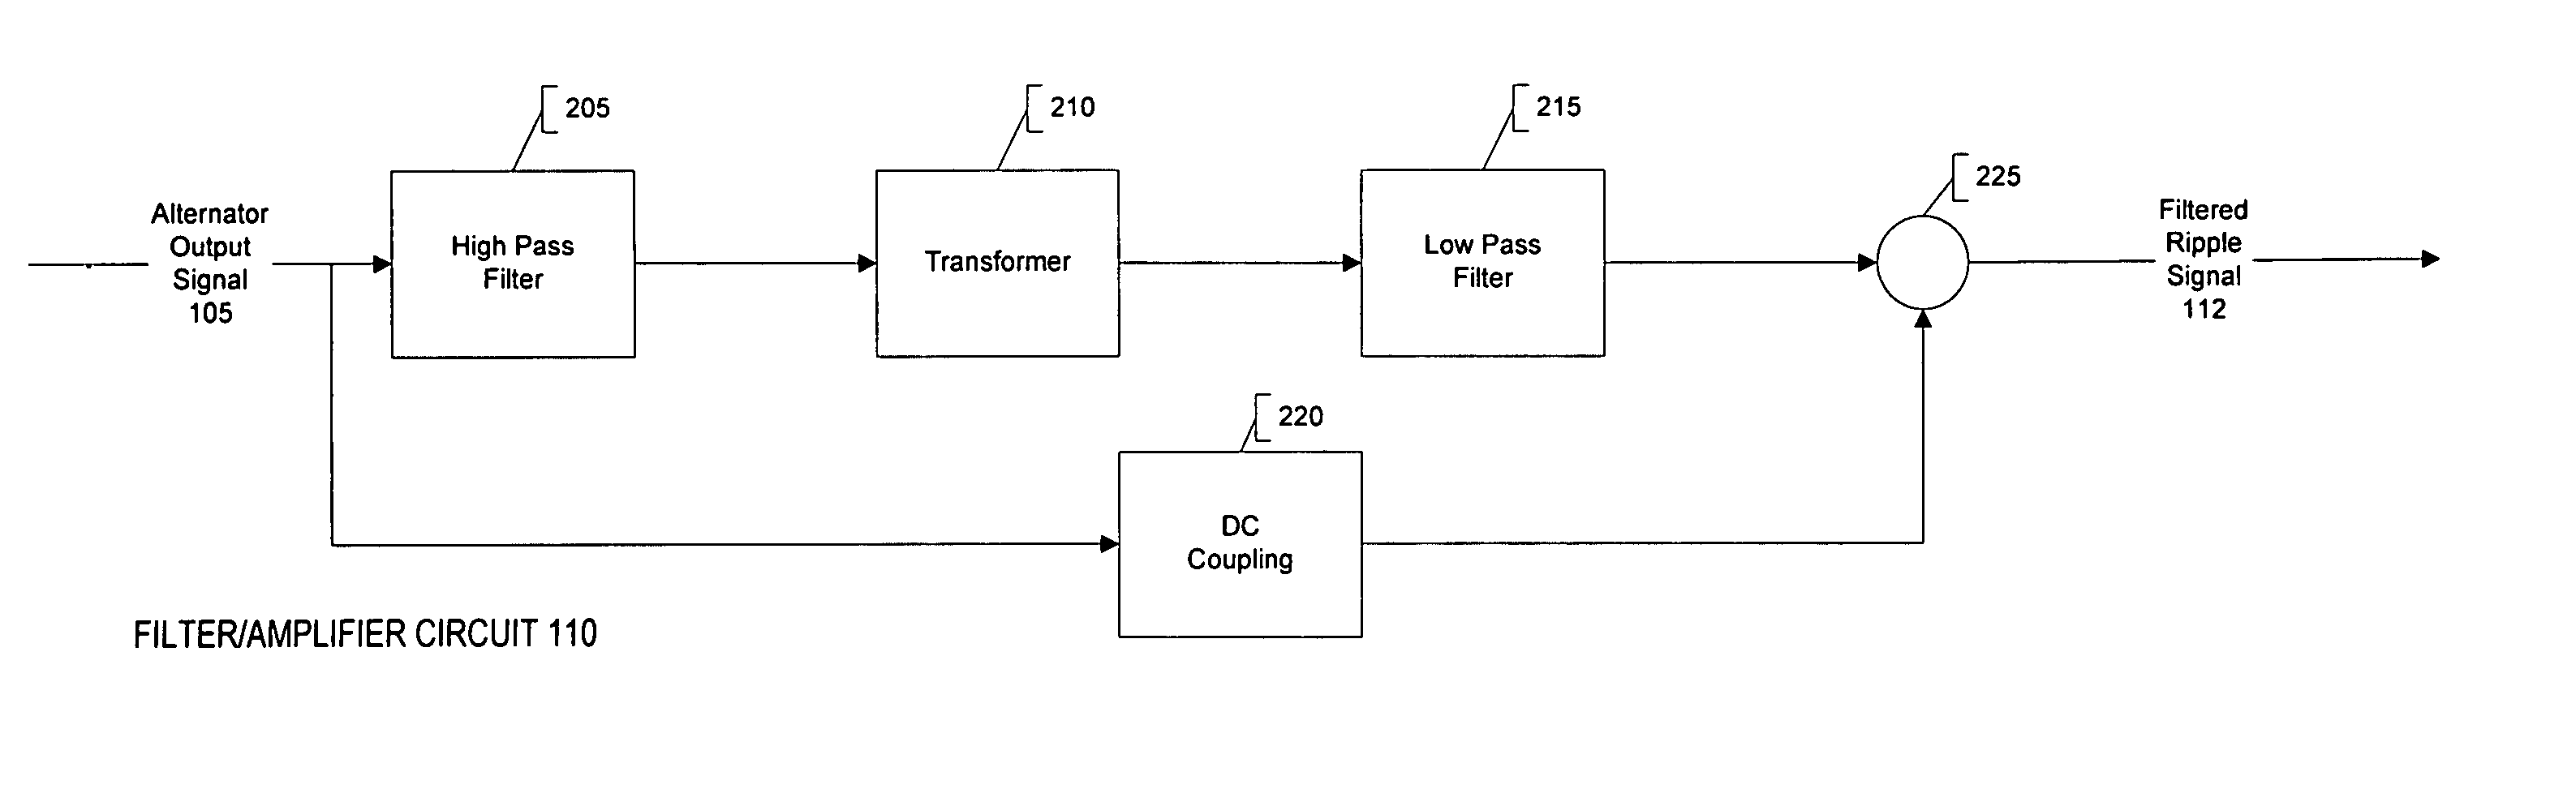 Decoding an alternator output signal